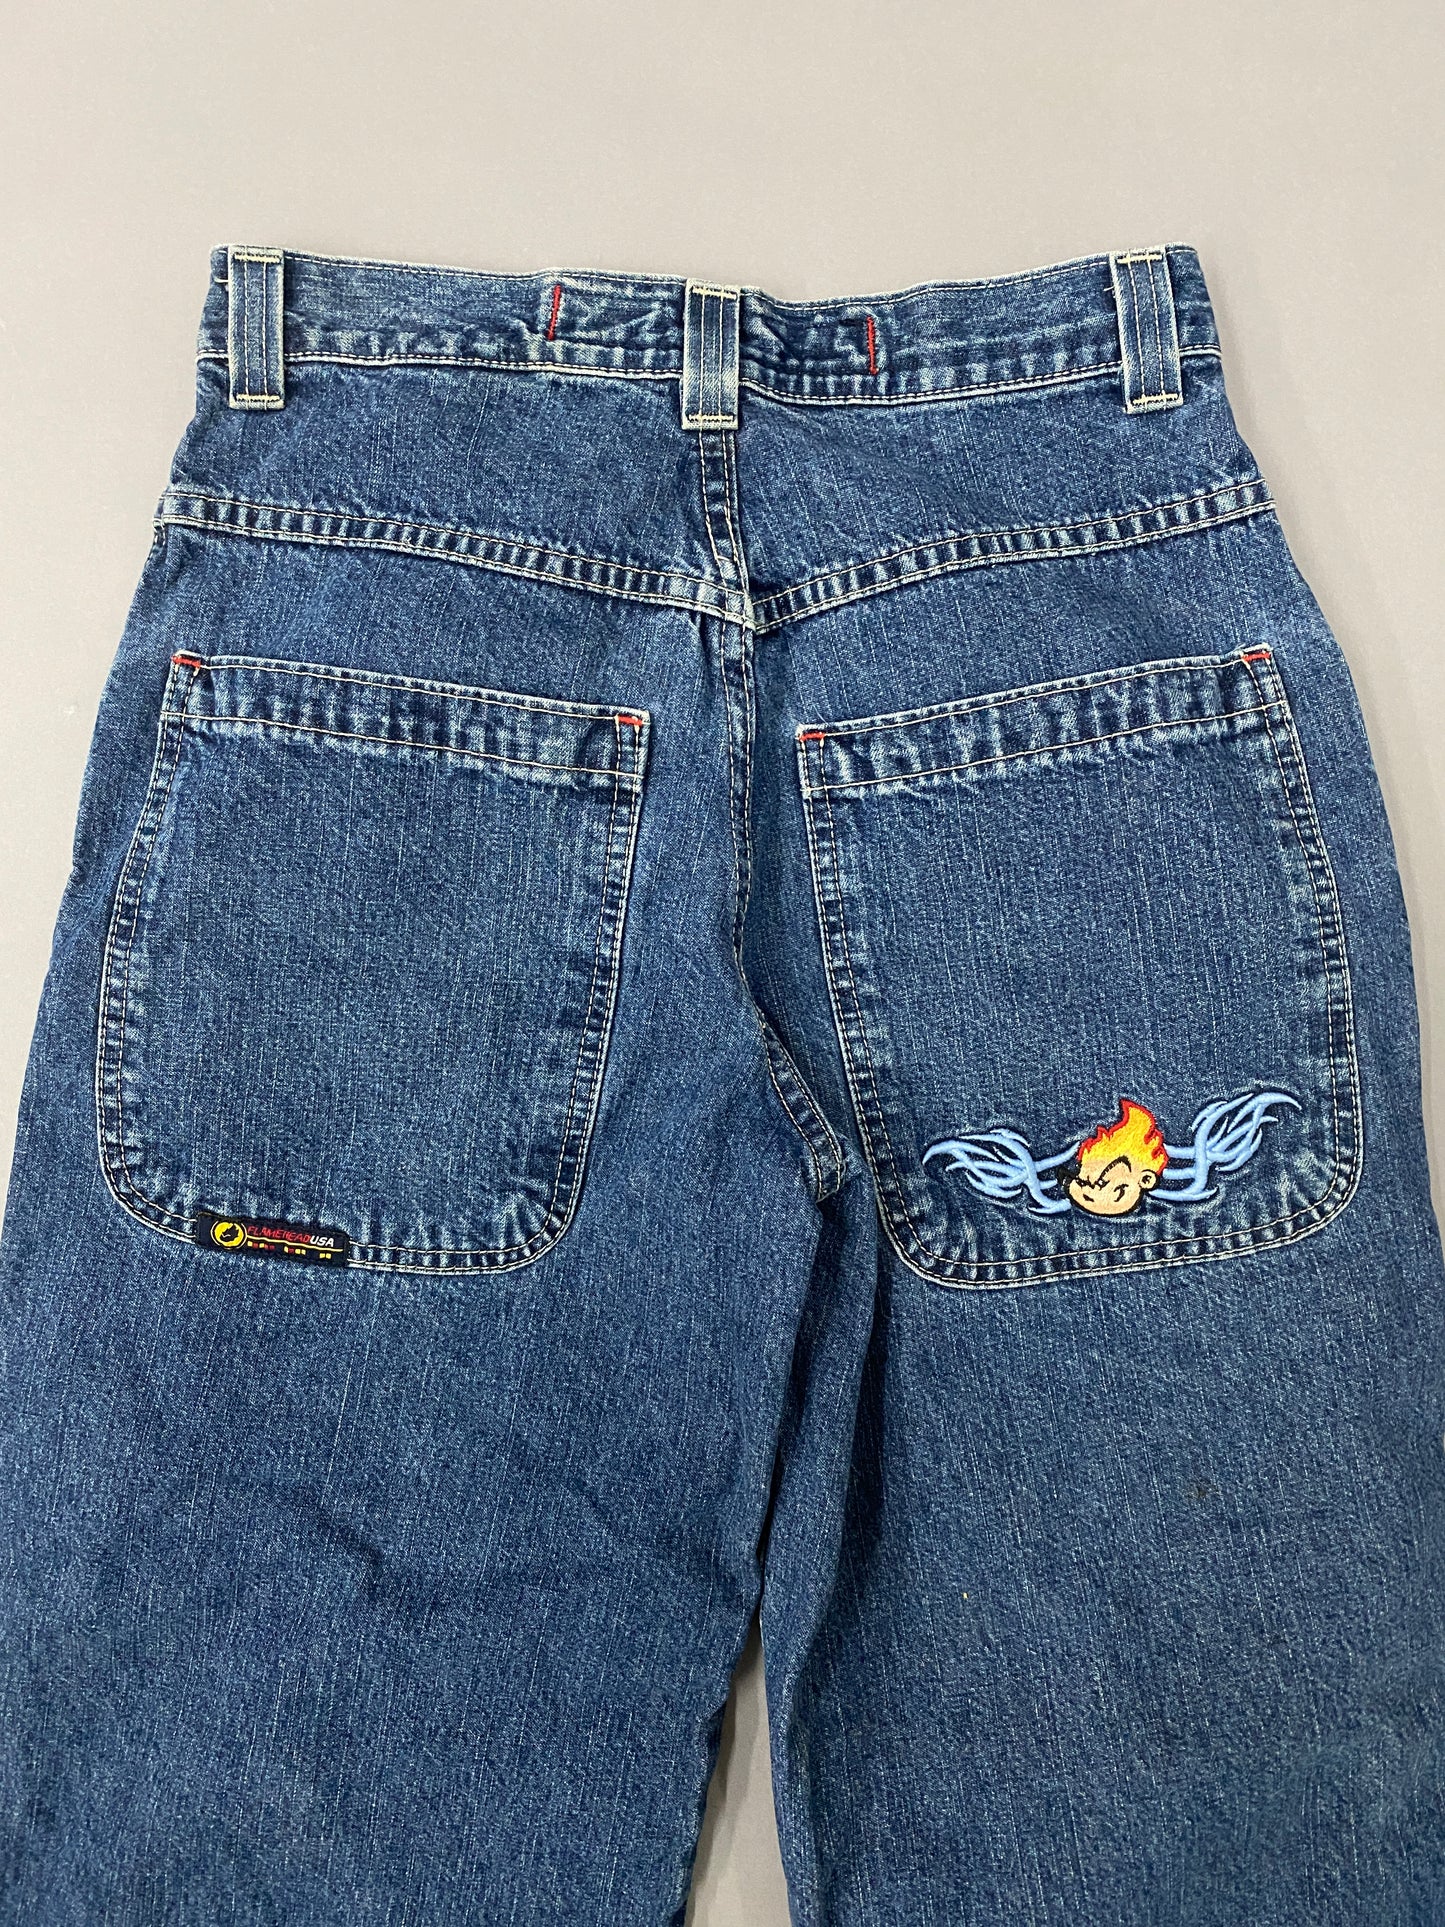 JNCO Flameboy Vintage Jeans - 18